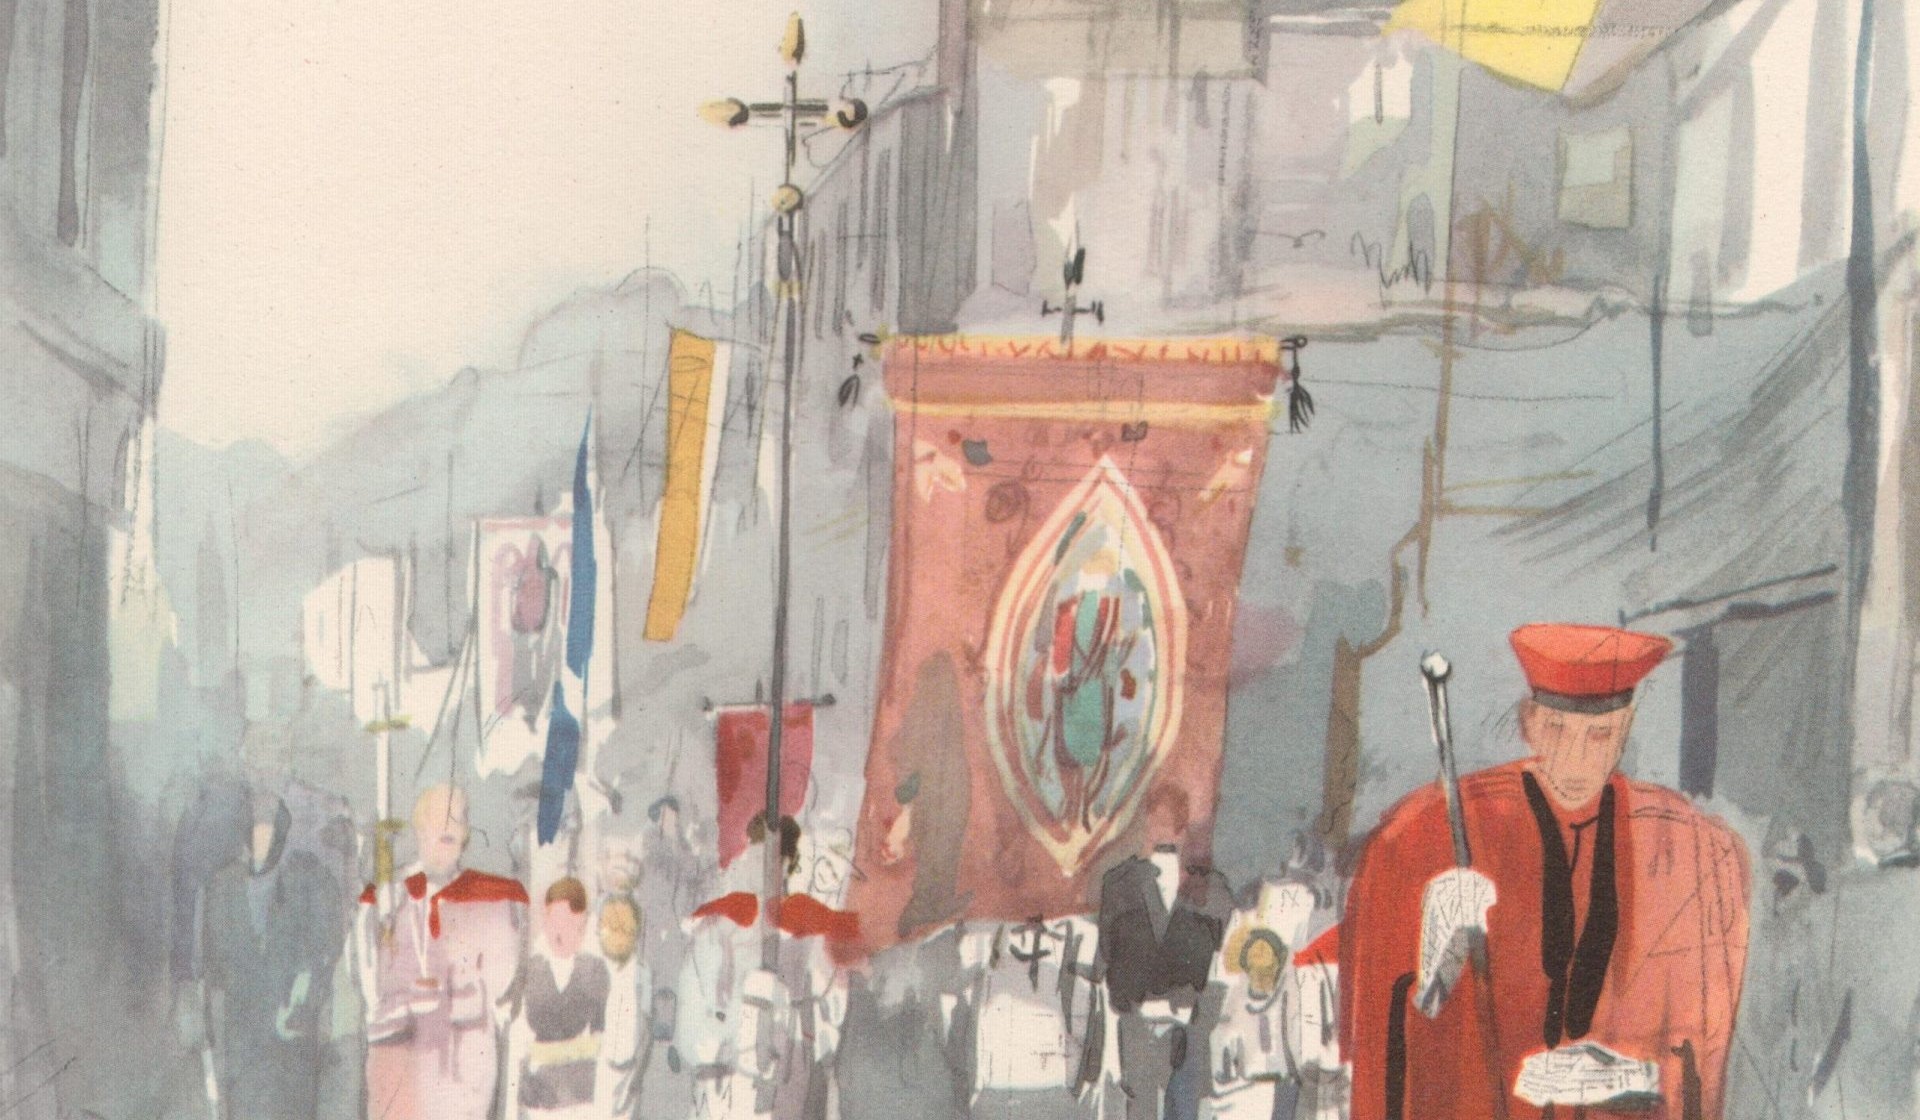 Die Fronleichnam Prozession in Essen-Werden im Jahr 1947 gemalt von Josef Urbach